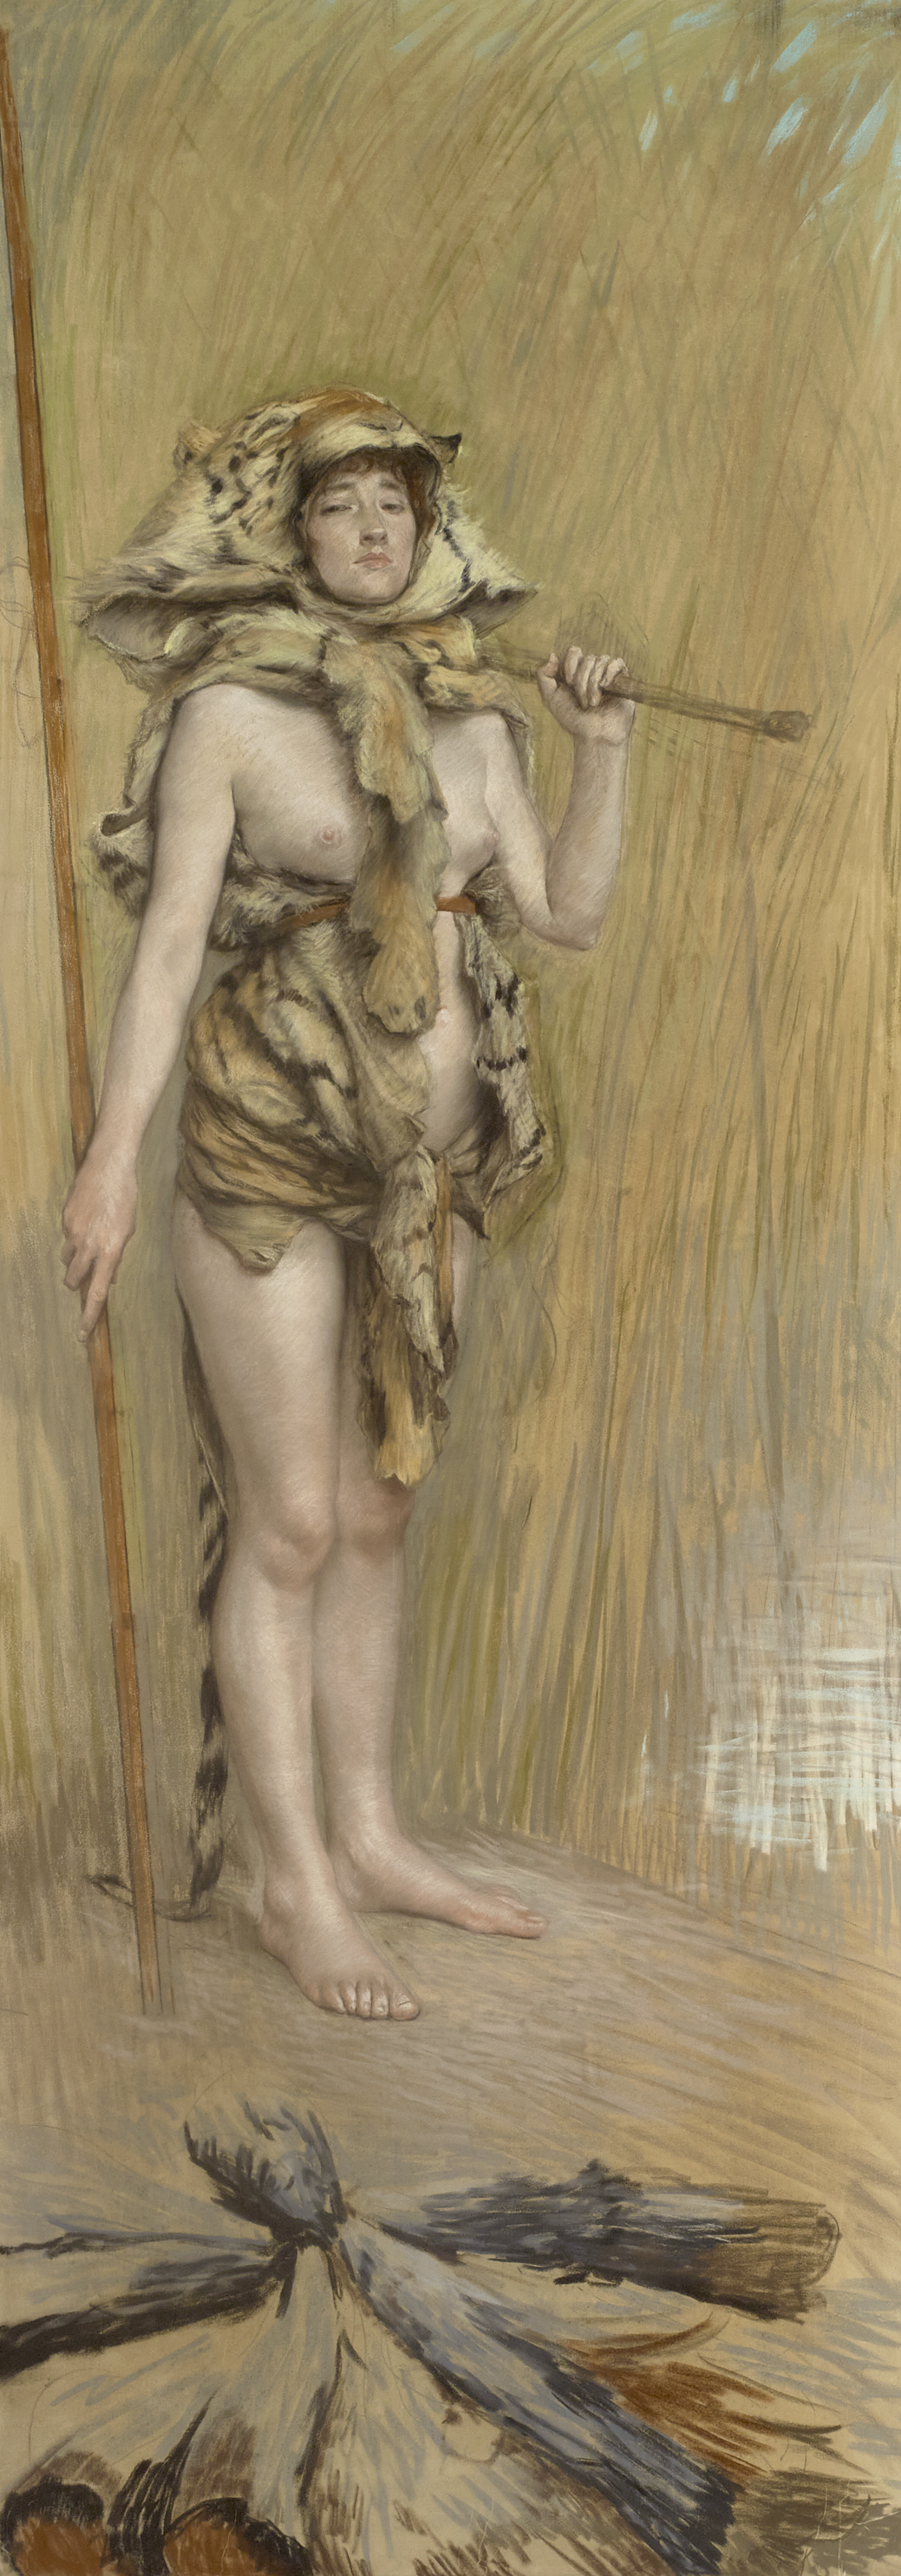 Femme préhistorique by James Tissot